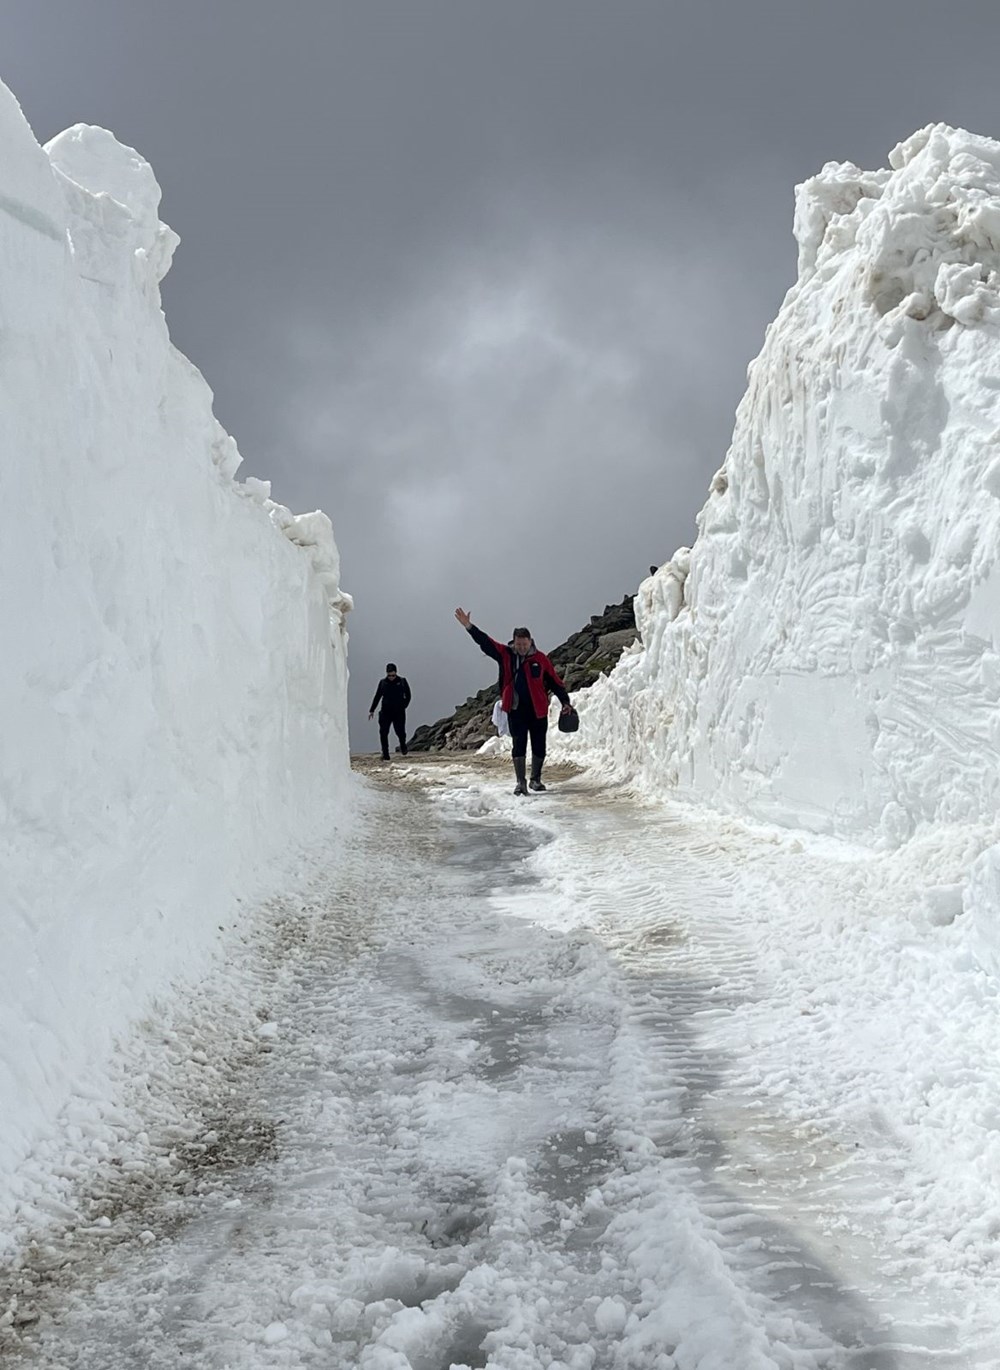 Türkiye’nin büyük bölümü kavrulurken, Rize’de karla mücadele
var: Ekipler yolları açmaya çalışıyor - 1